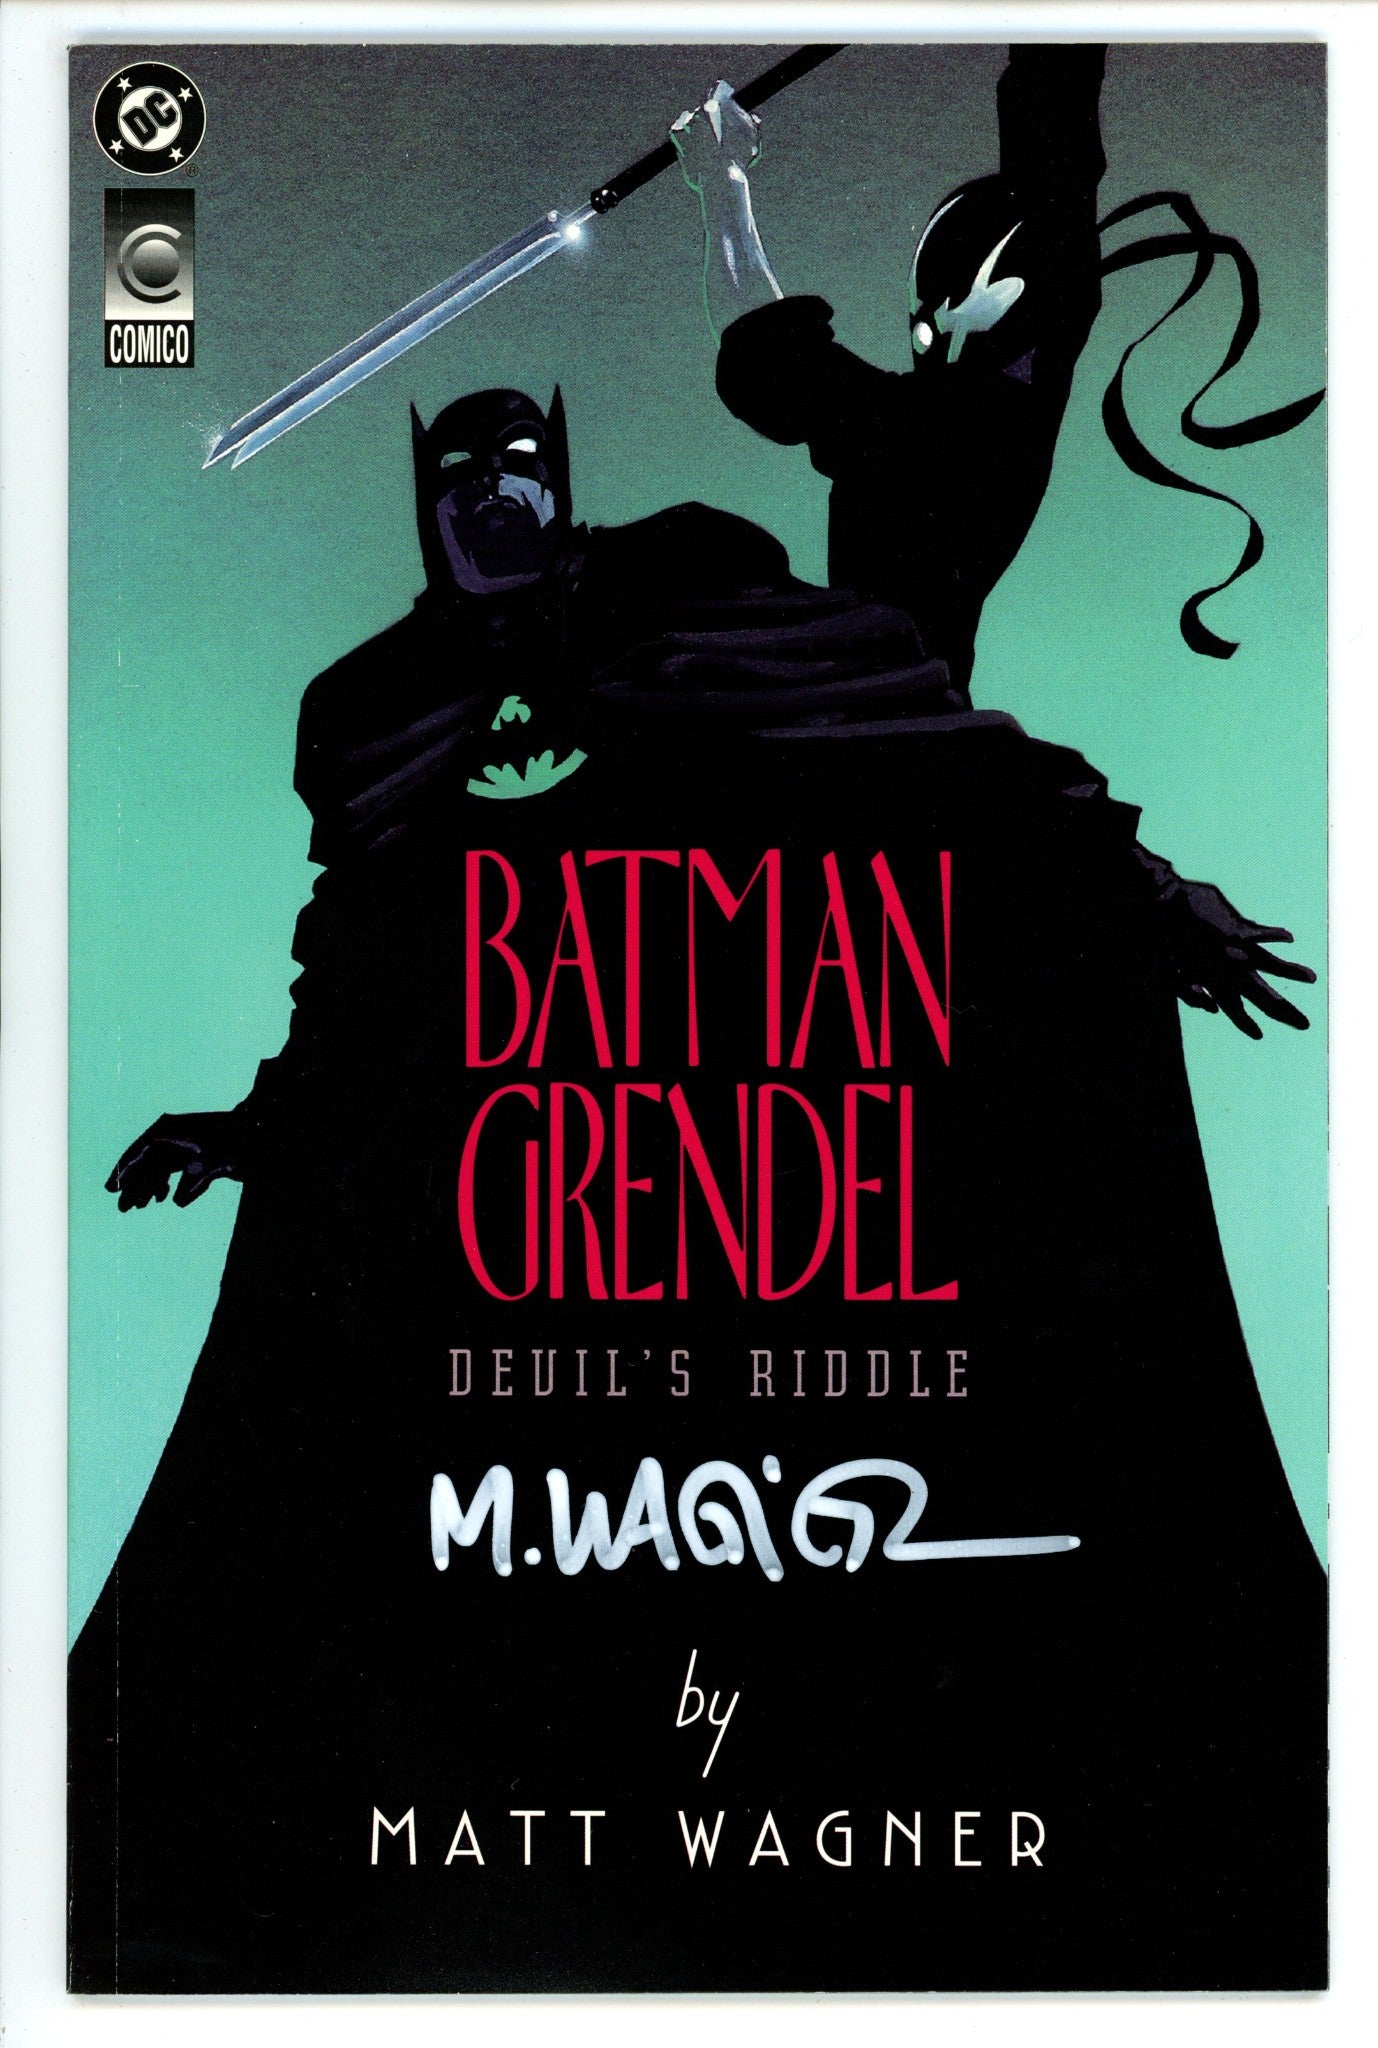 Batman / Grendel: Devil's Riddle 1 VF/NM (9.0) (1993) Signed x1 Cover Matt Wagner 